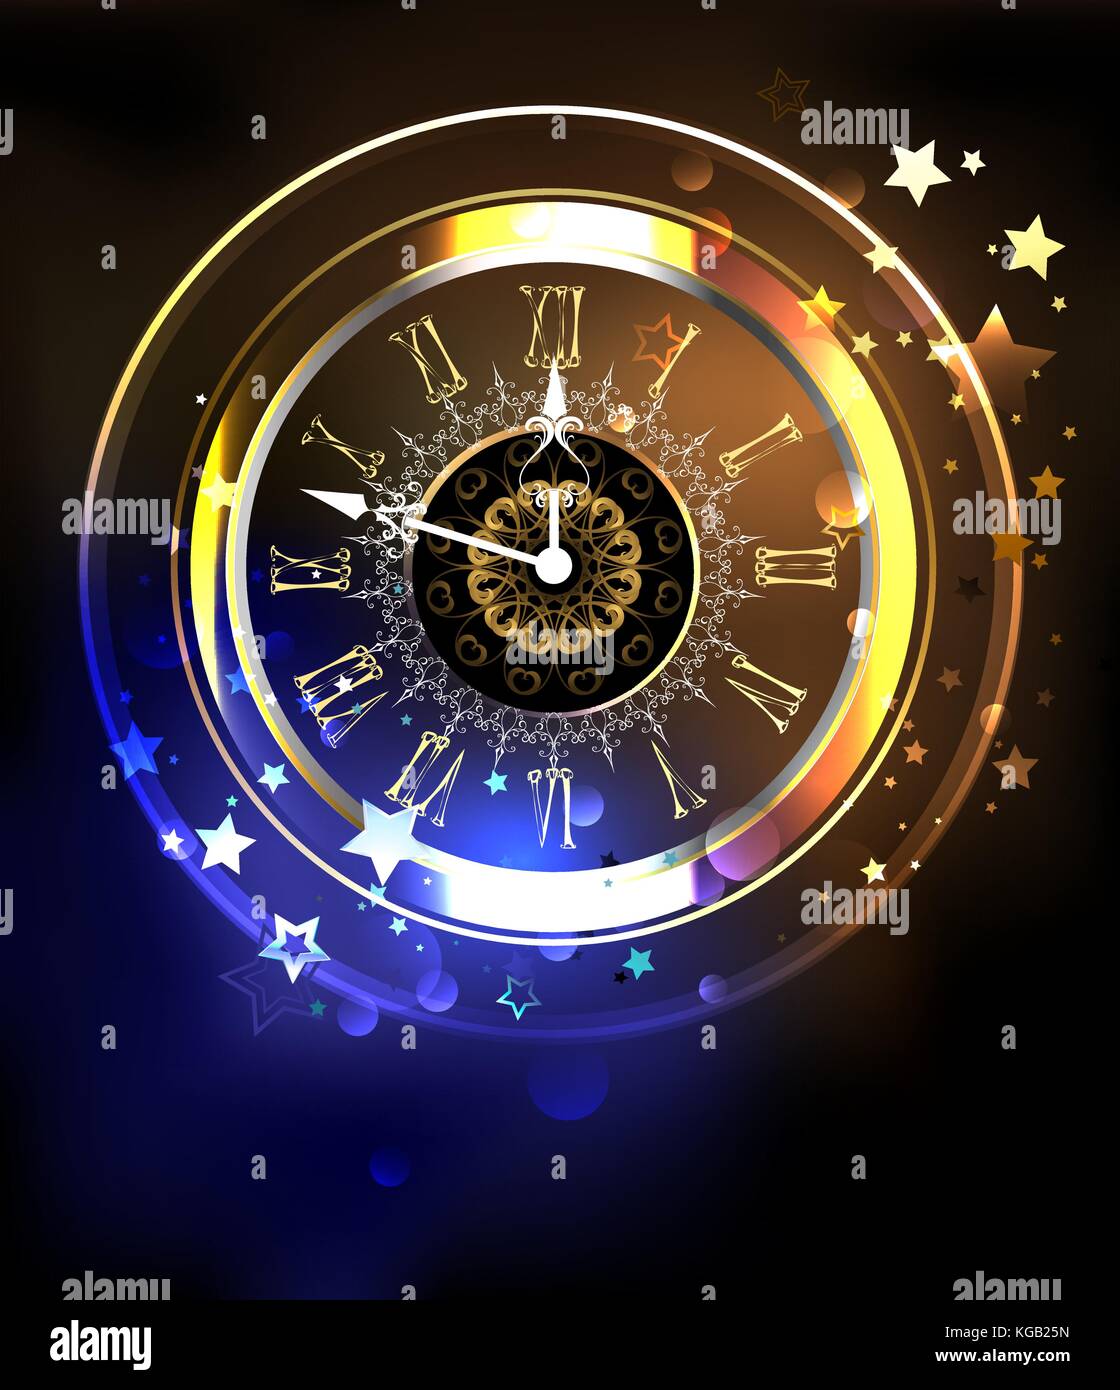 Leuchtende antike Uhr auf eine kosmische gelben und blauen Hintergrund mit Sternen. antike Uhr. Design mit Sternen. Stock Vektor